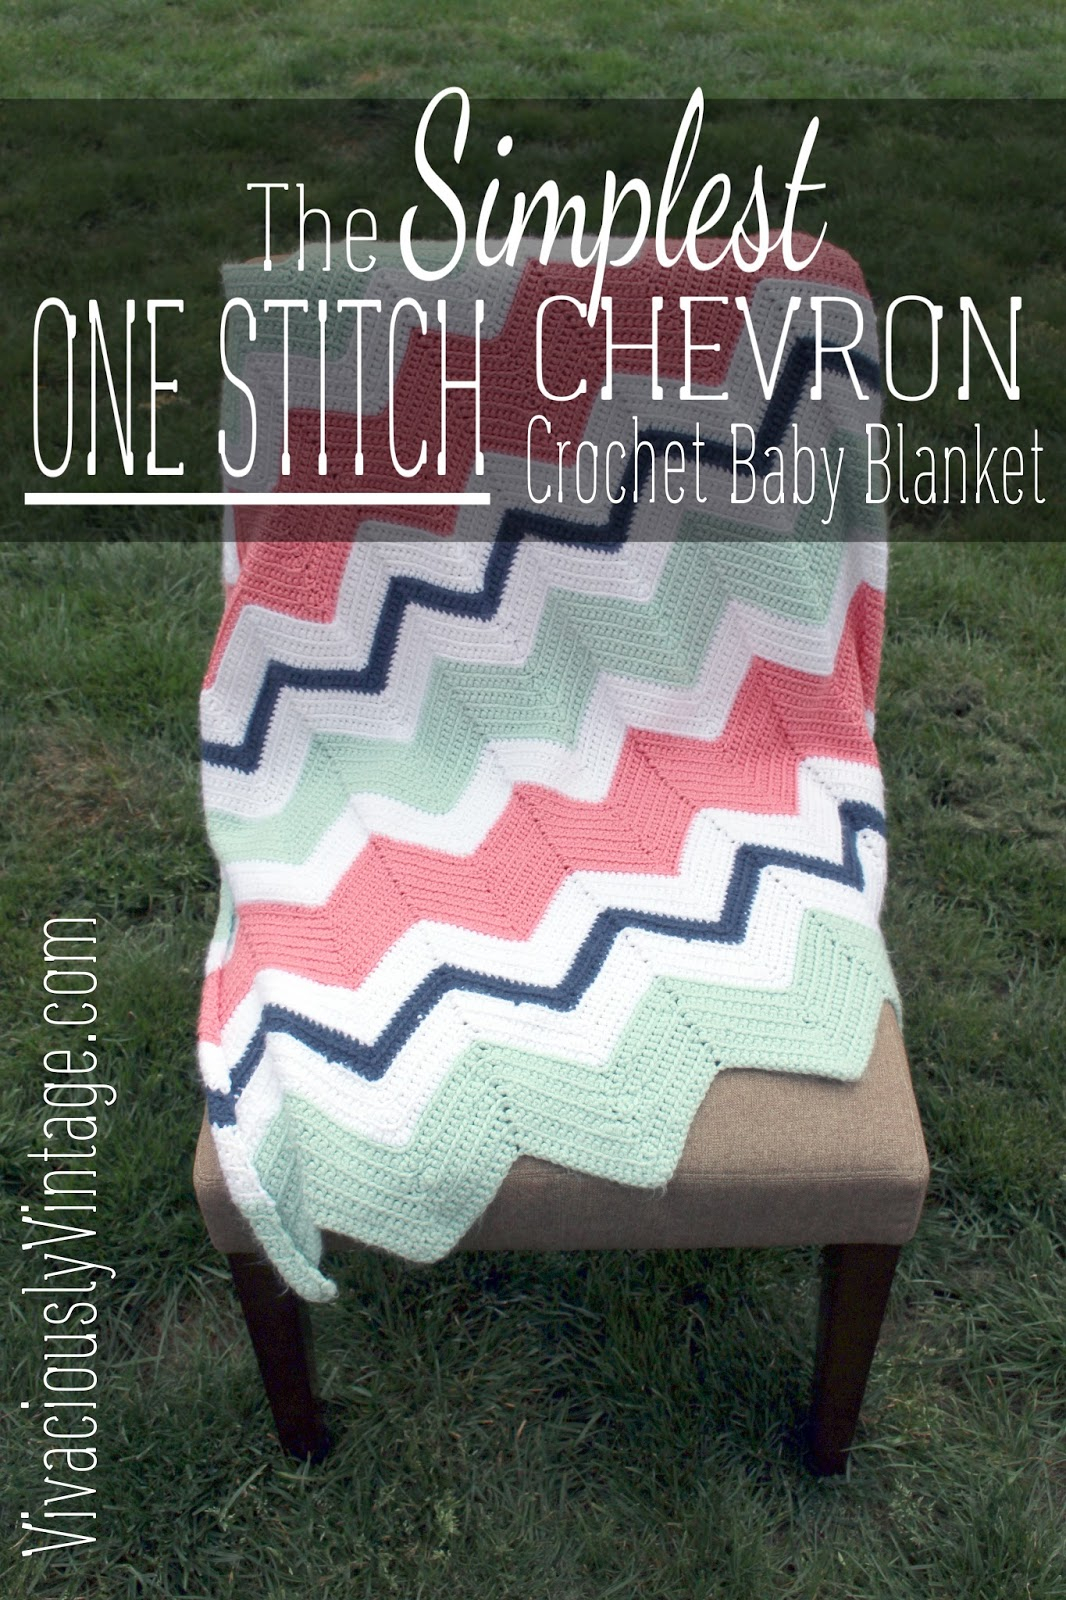 Crochet Chevron Pattern Ansley Designs Easy Beginner Chevron Crochet Ba Blanket Only One